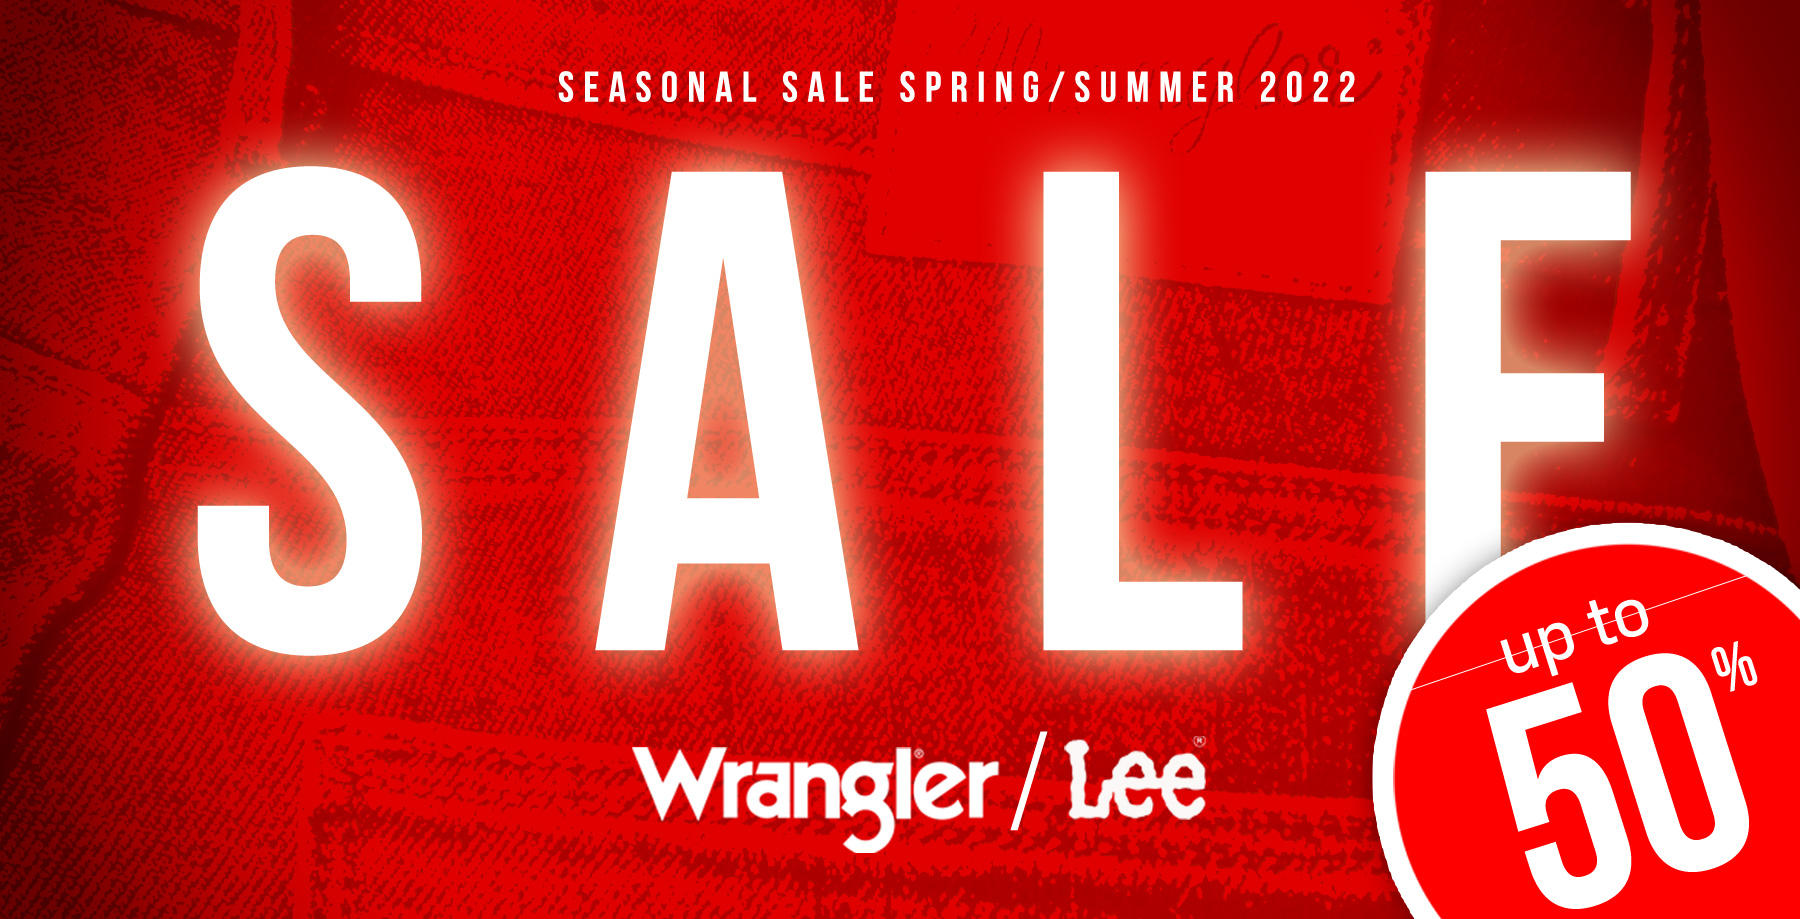 Saisonverkauf Wrangler / Lee 2022 bis zu -50%